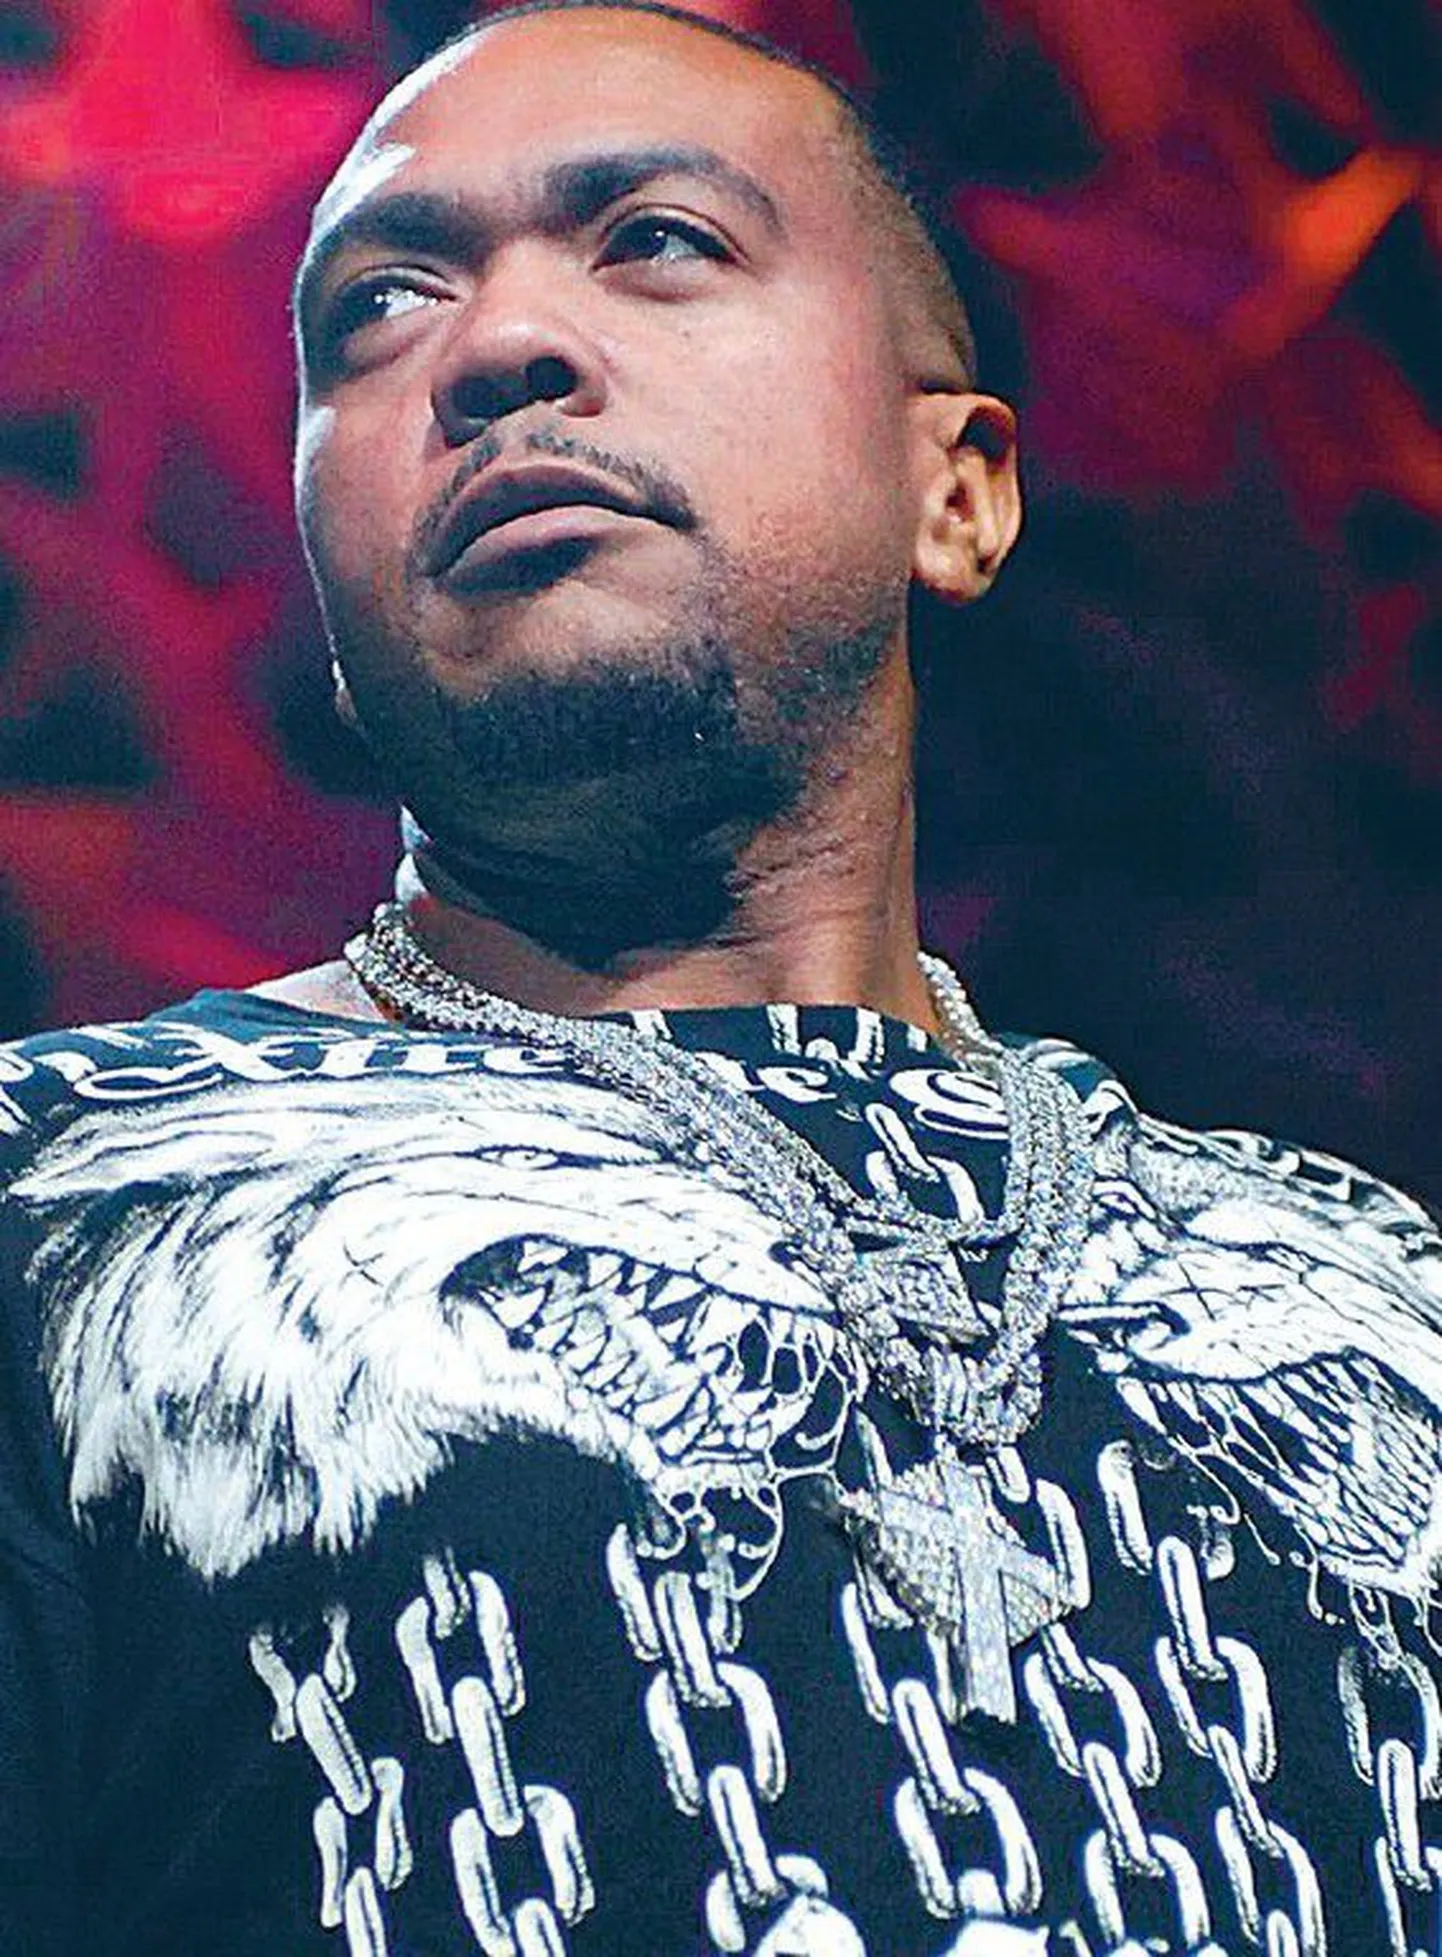 Ameerika muusikaprodutsent Timbaland on üks nõutumaid popheliloojaid-produtsente. Hiljuti valmis koostöös Madonnaga lauljanna uus album «Hard Candy».